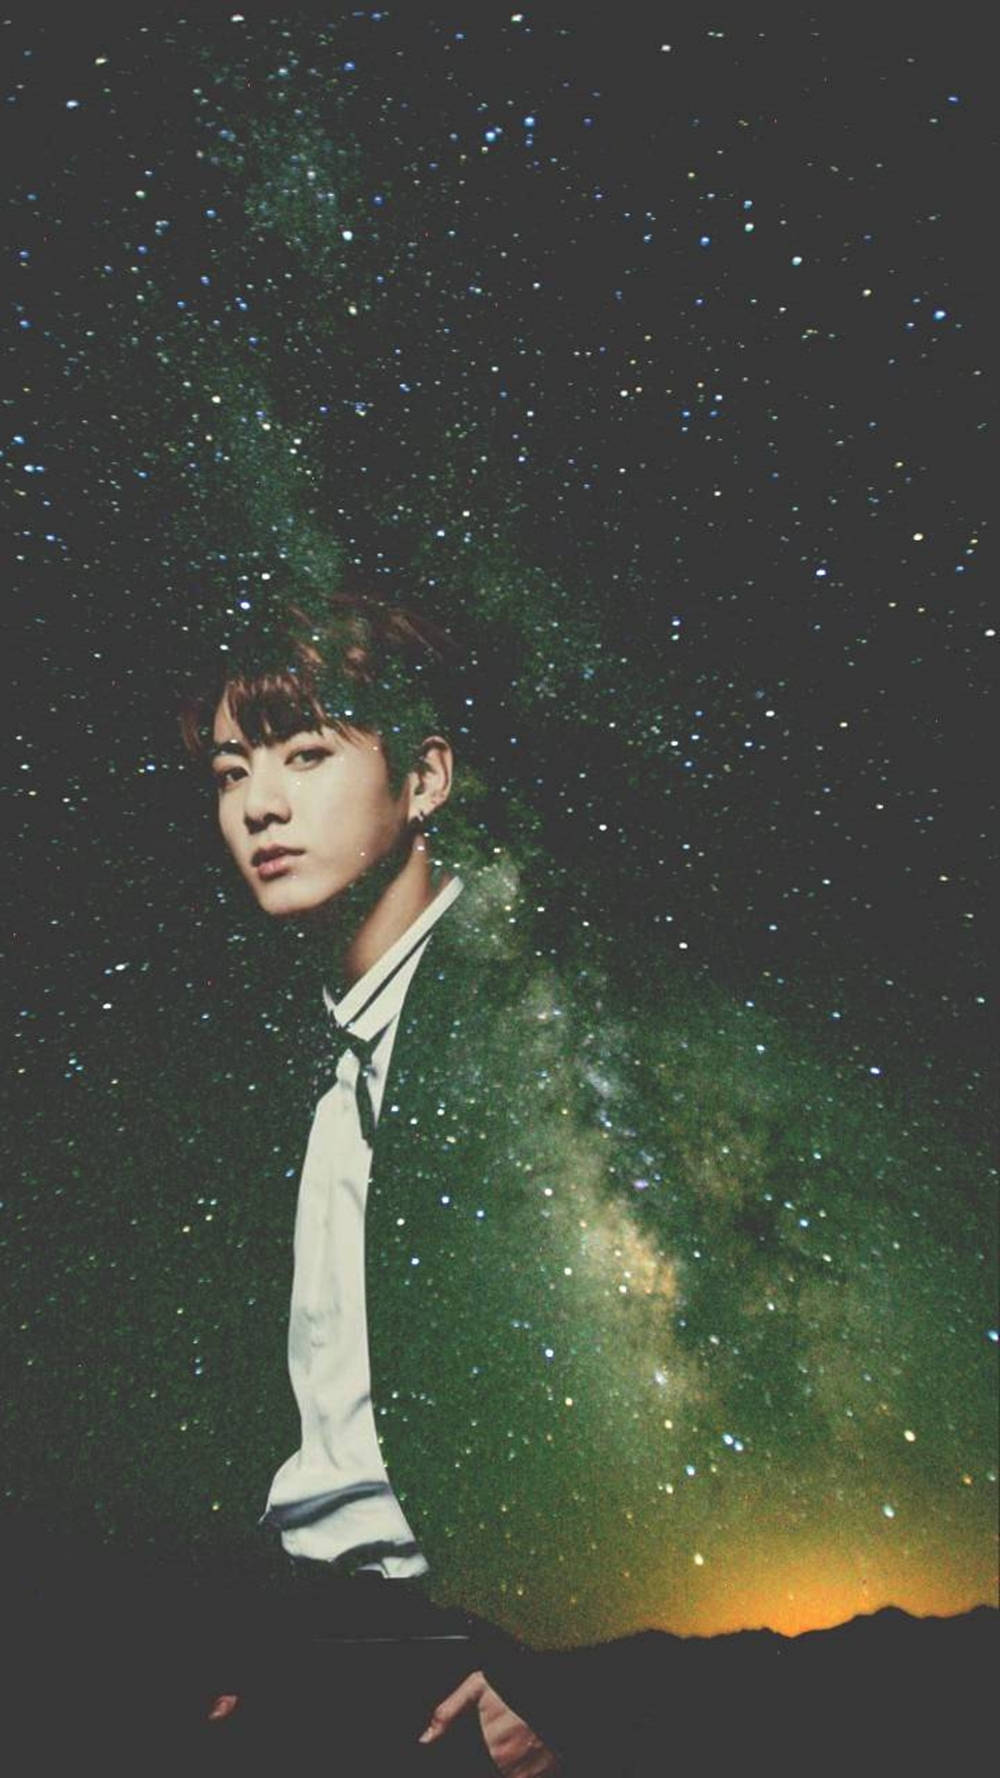 BTS JK Milky Way Illustration Wallpaper